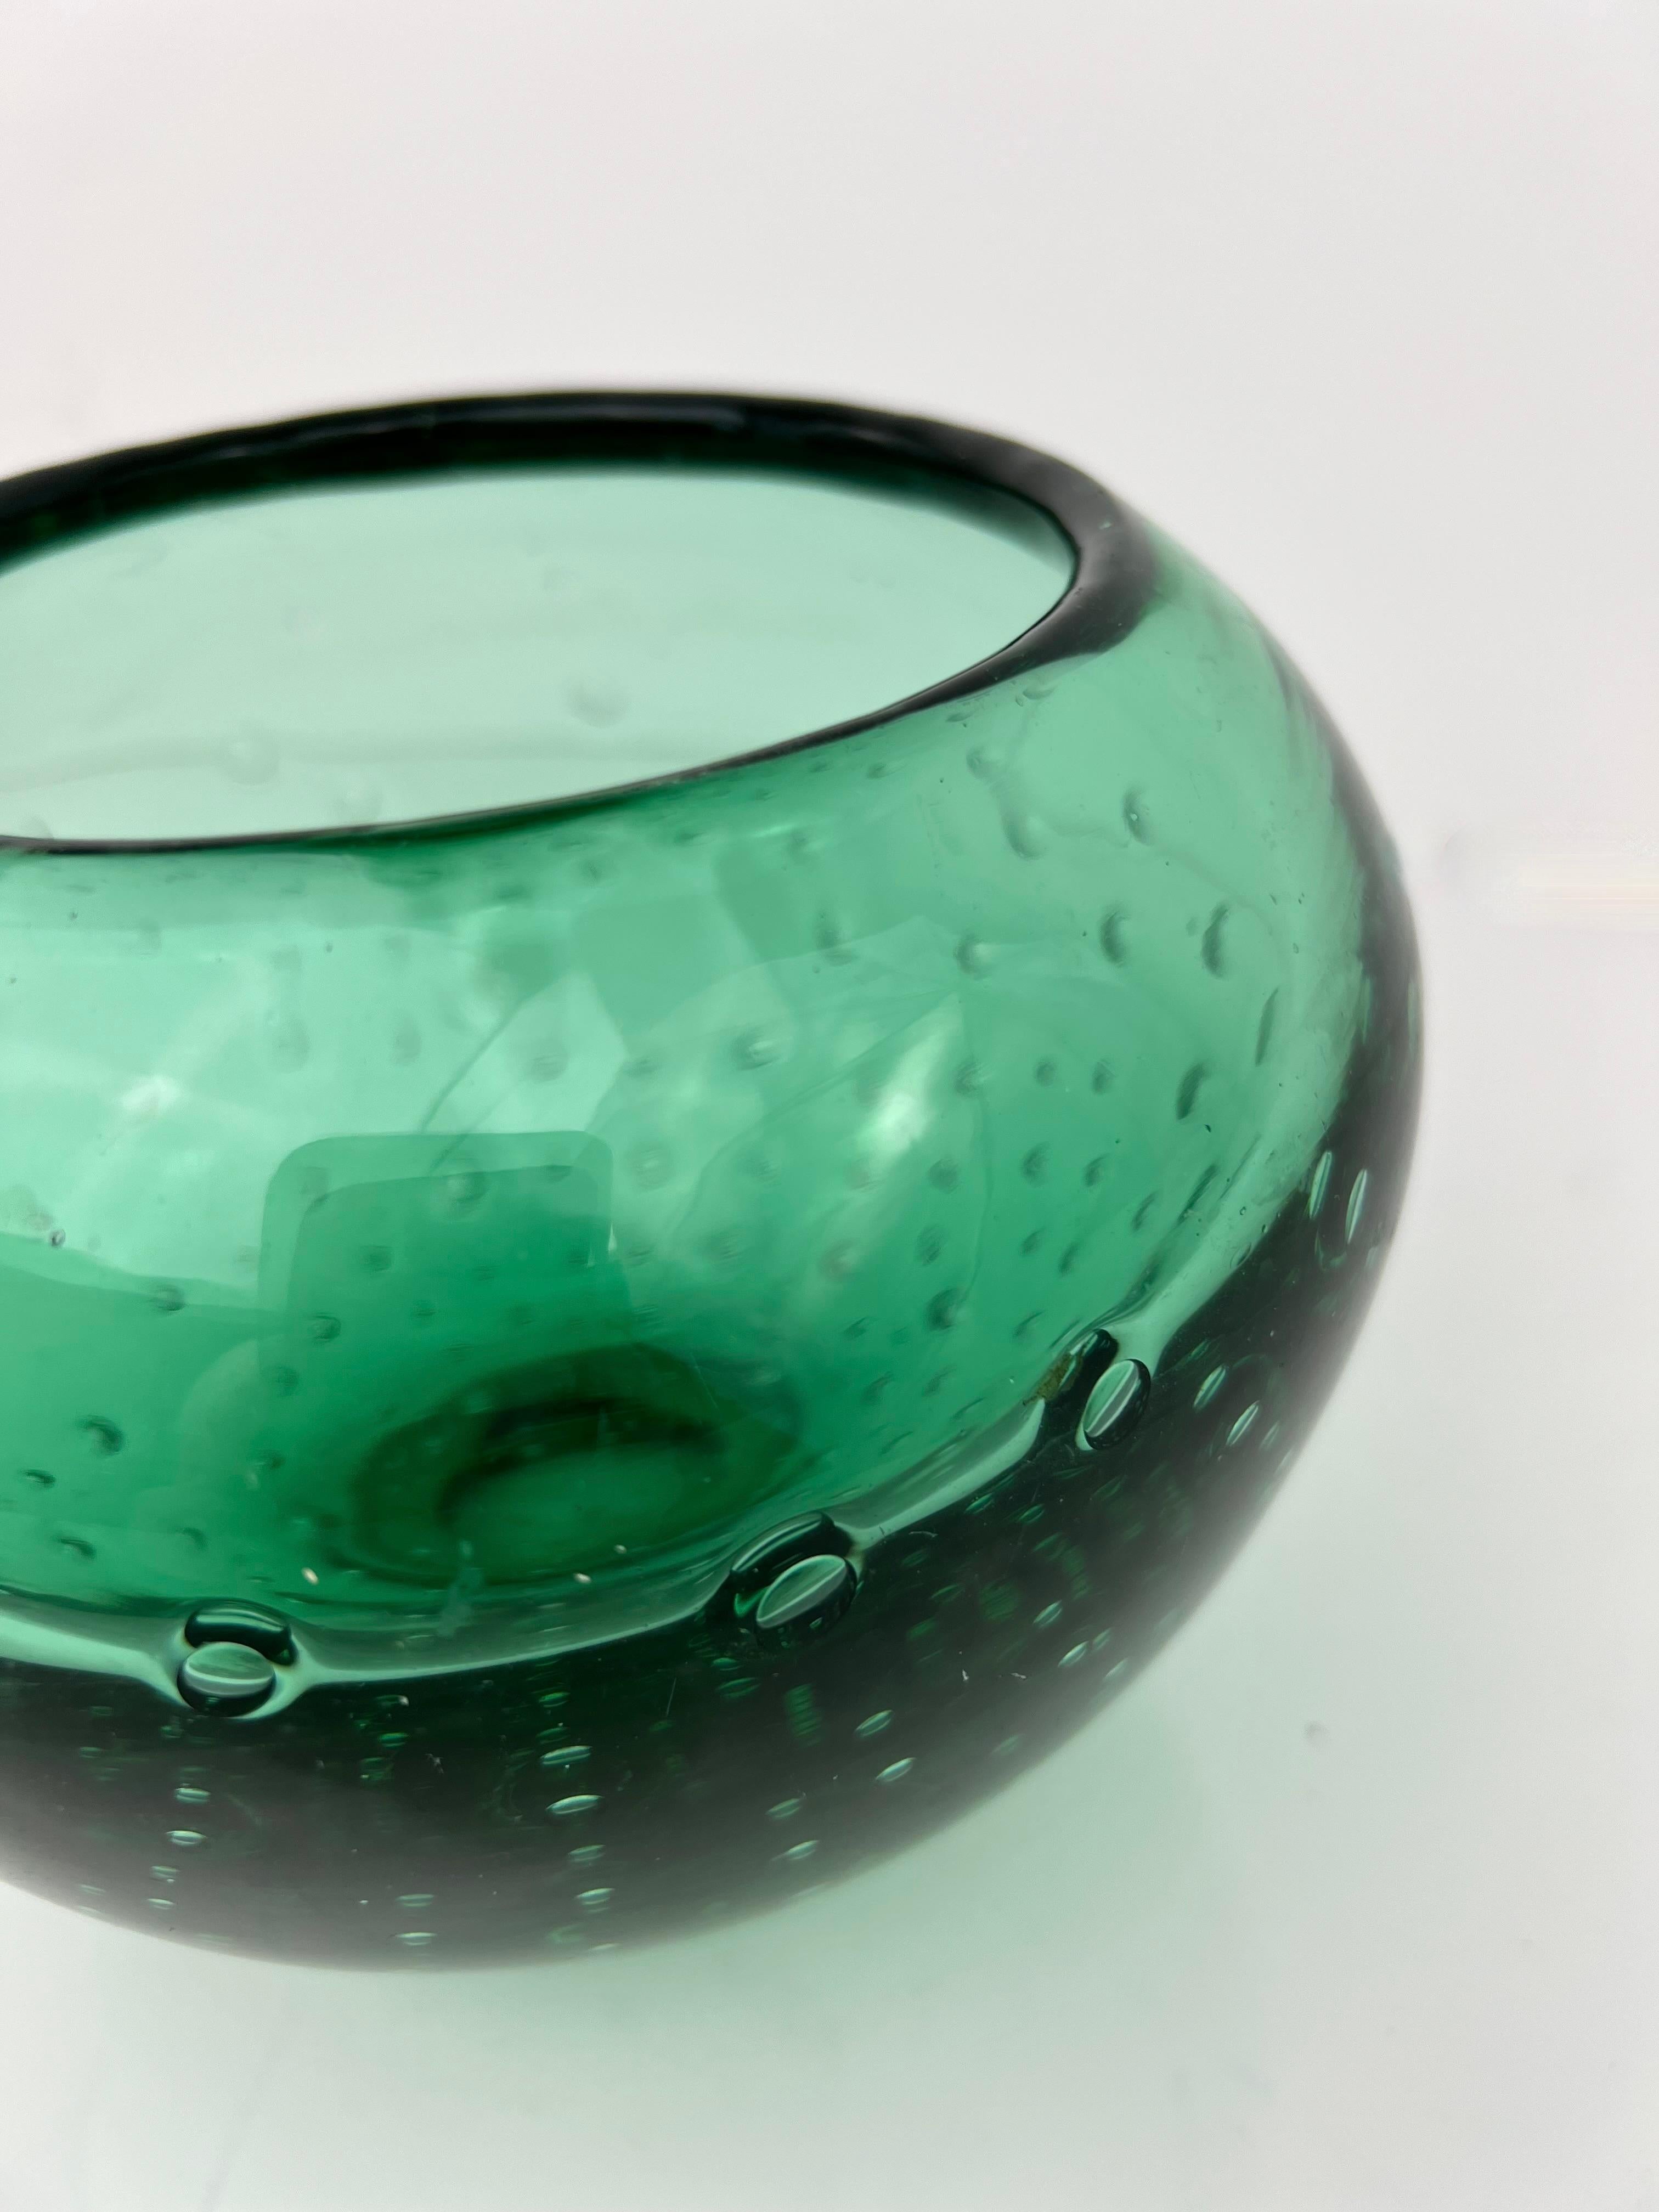 Superbe et lourd bol/vase décoratif à bulles contrôlées du milieu du siècle en vert par l'artiste Blenko, Carl Erickson (1899-1966) pour sa société Erickson Glass (1943-1961).  Erickson glass était bien connu pour sa ligne de verre vert à bulles